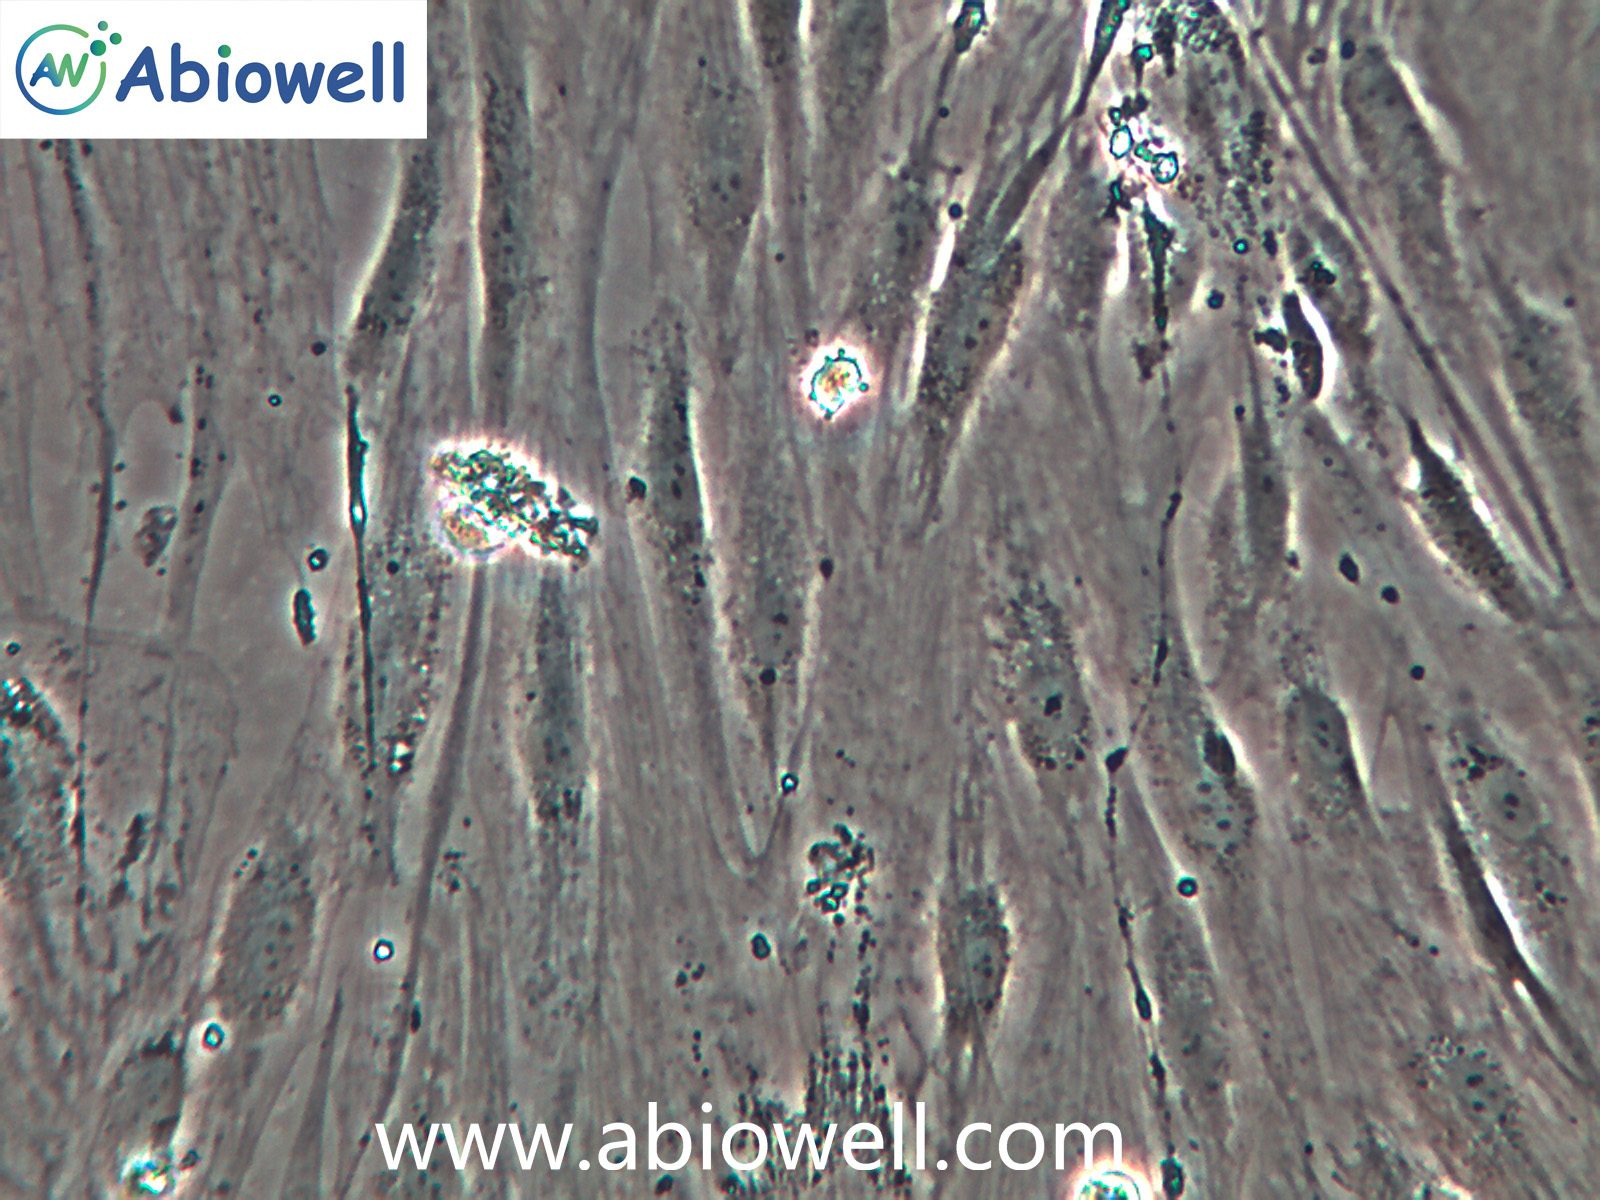 脂肪干细胞/脐带间充质干细胞/羊膜间充质干细胞/免疫荧光鉴定价格_品牌:iCell-丁香通官网